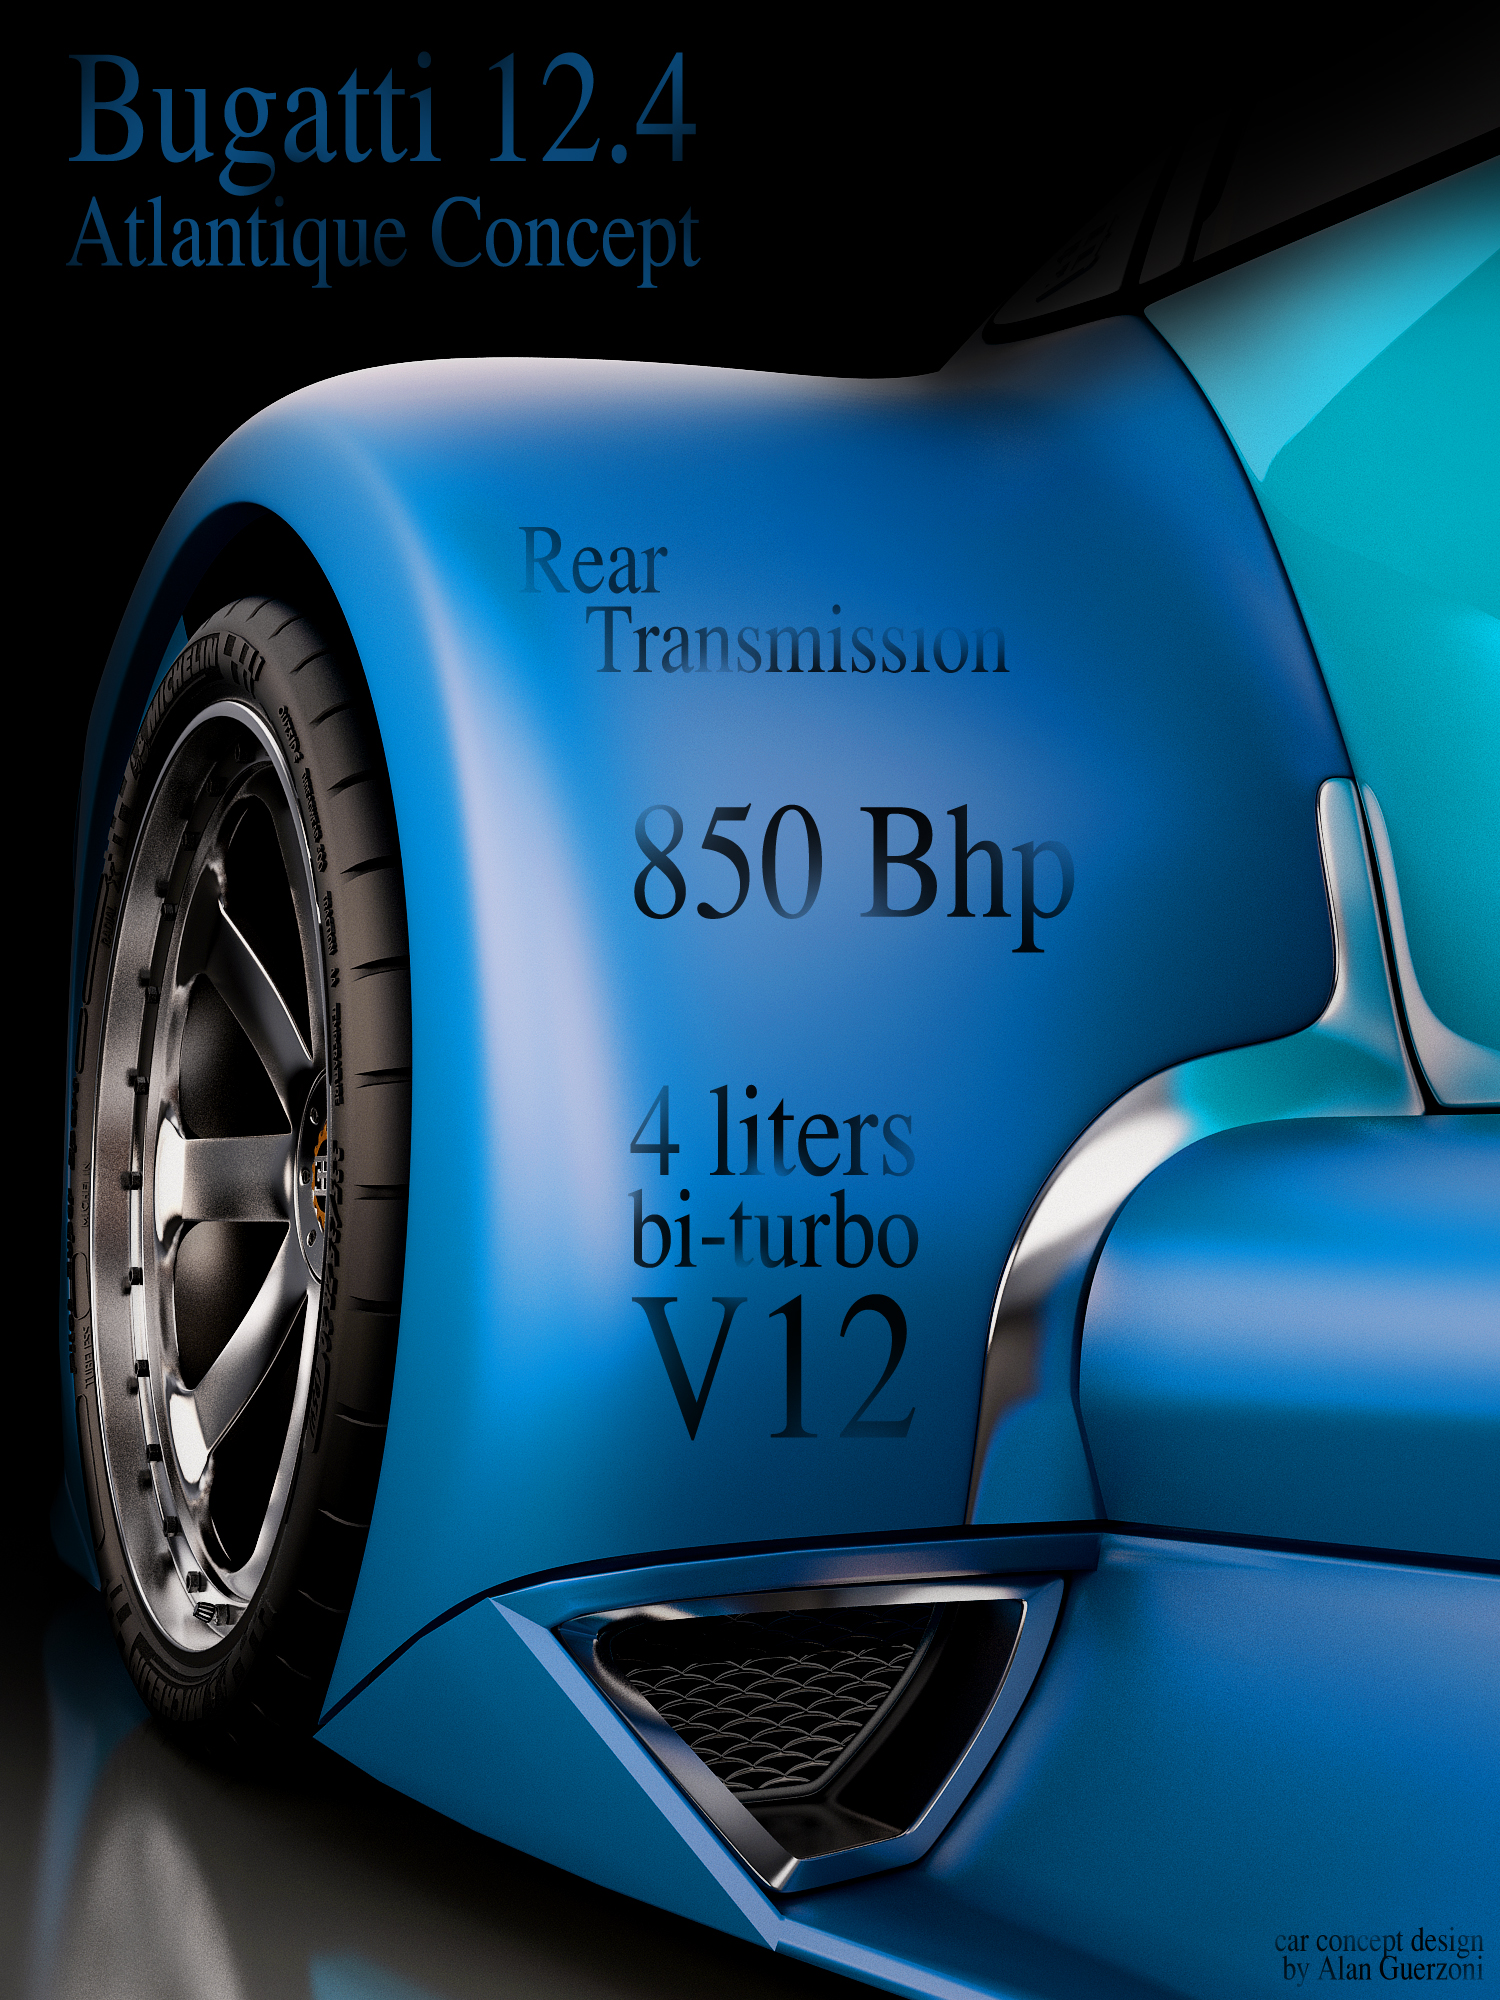 Bugatti 12. Bugatti 12.4 Atlantique. Bugatti Atlantique Concept. Bugatti Concept.